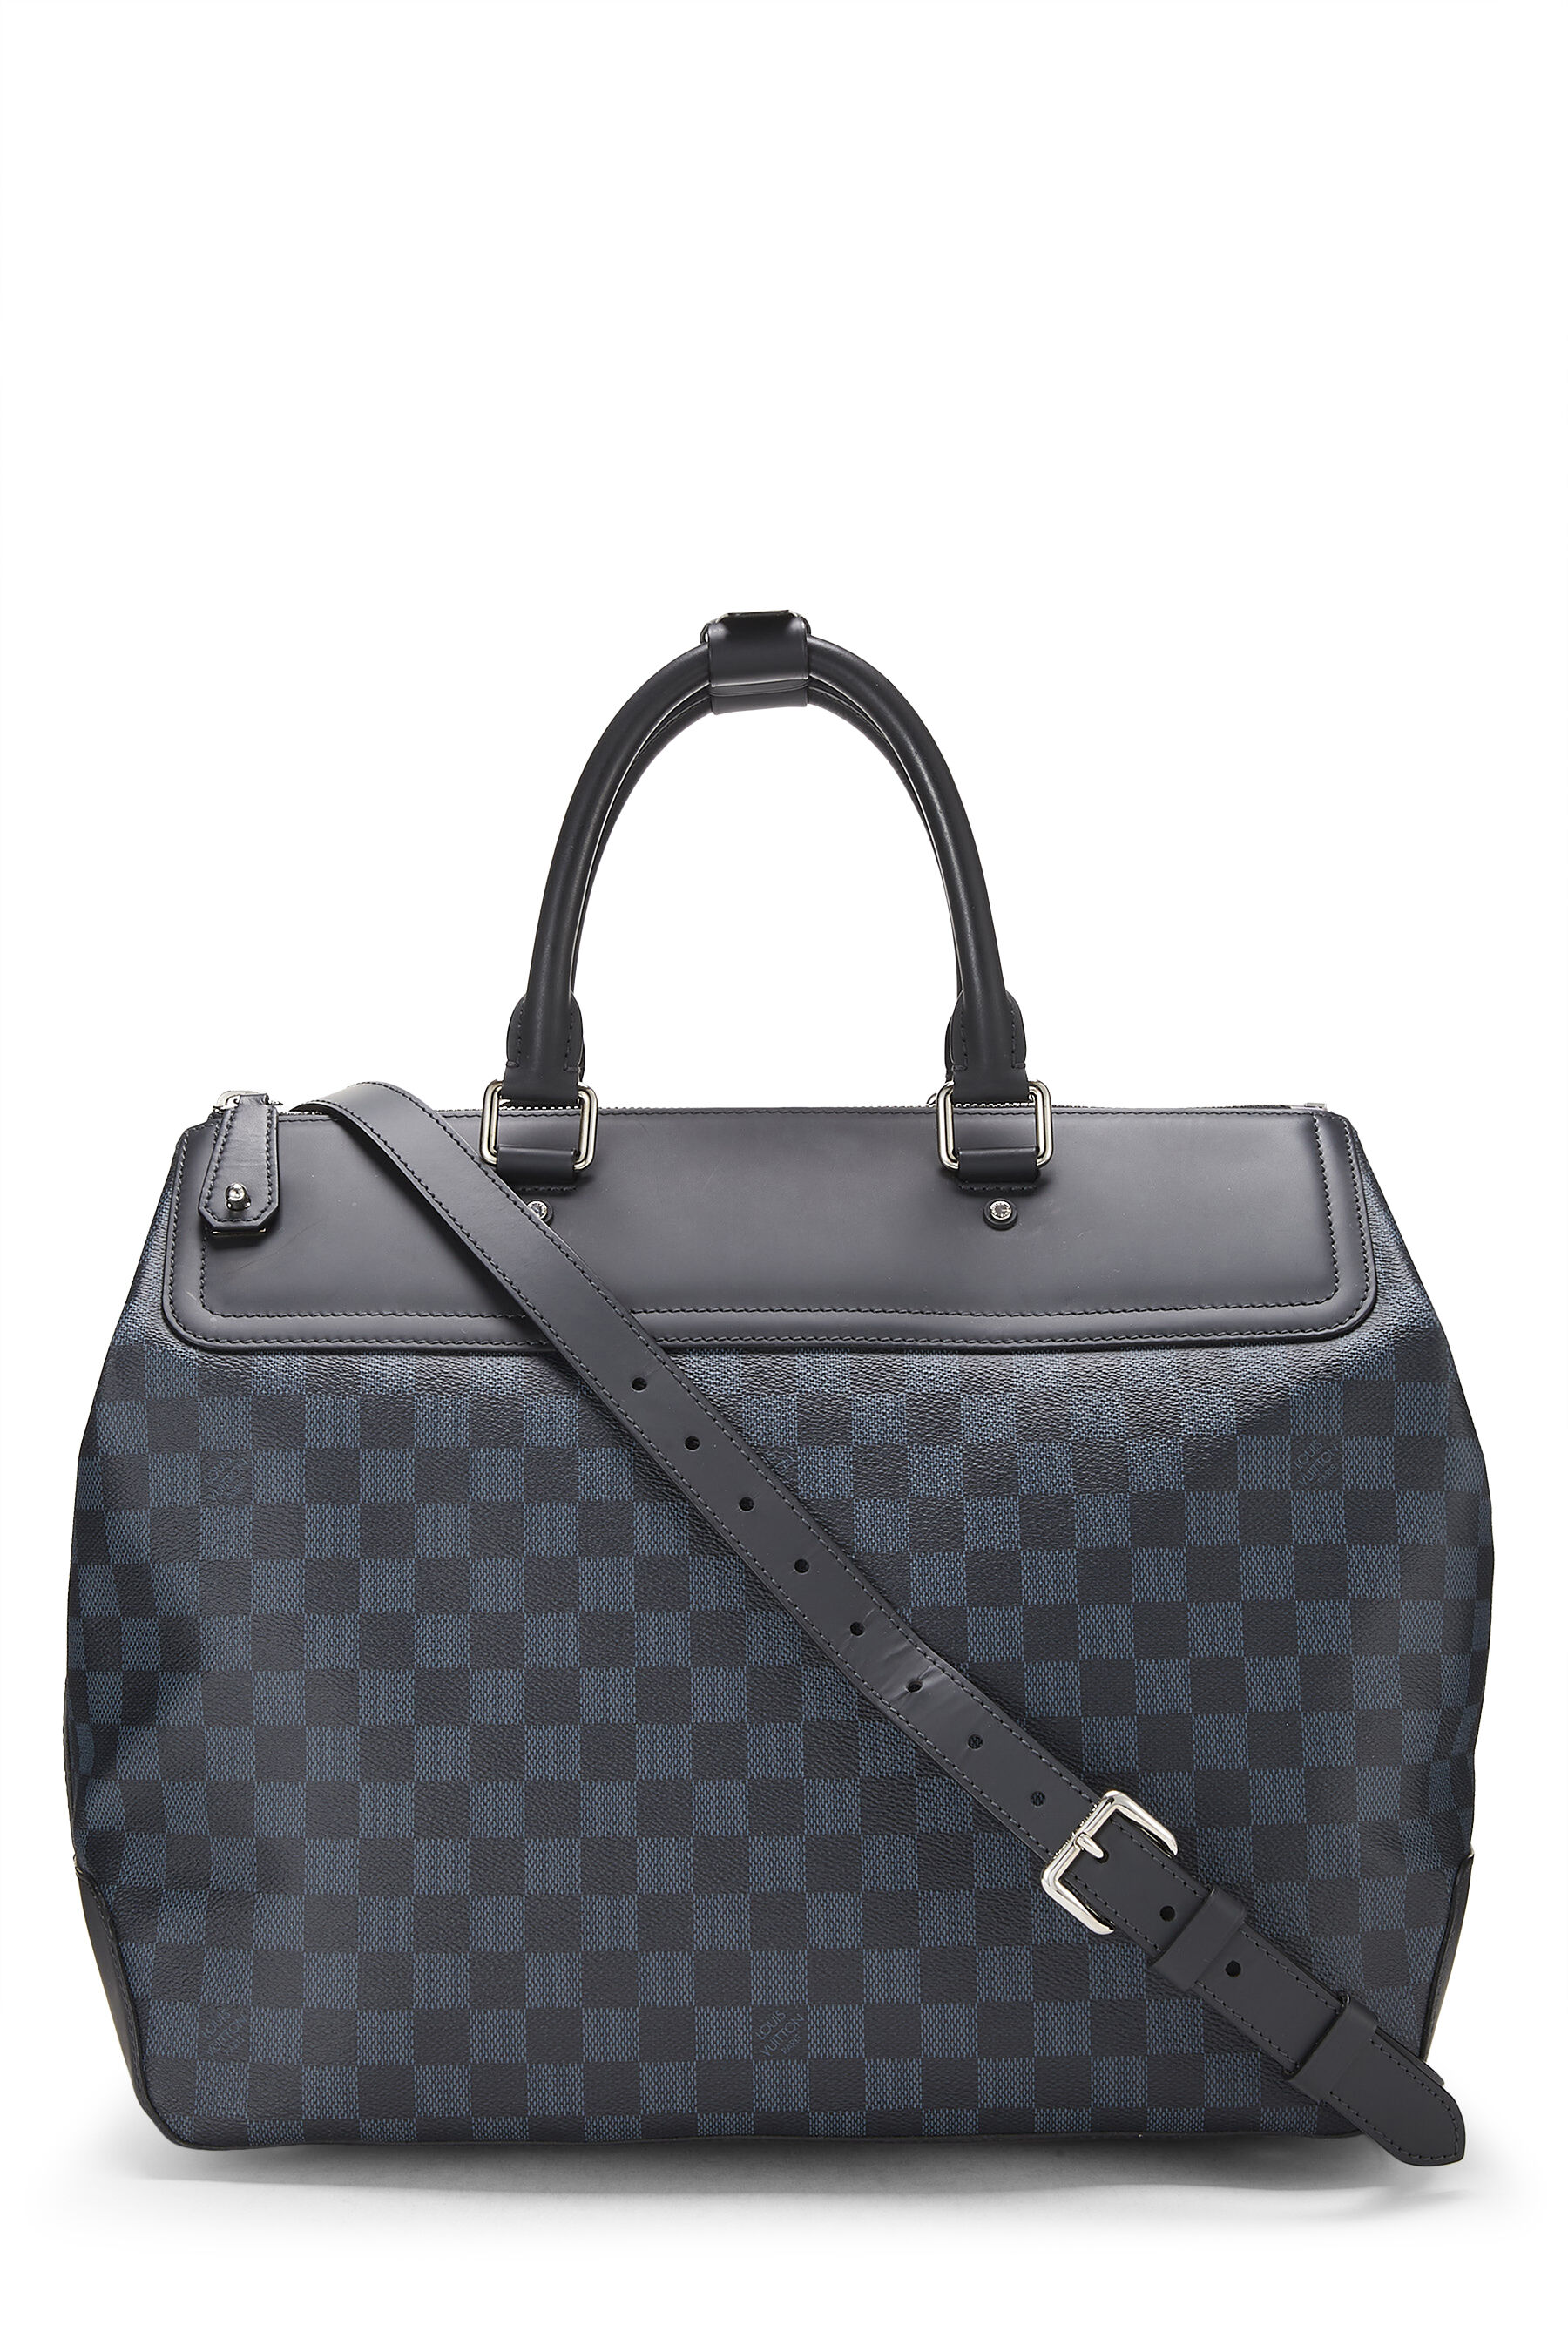 Louis Vuitton Greenwich Messenger Bag Damier Cobalt Blue 572231